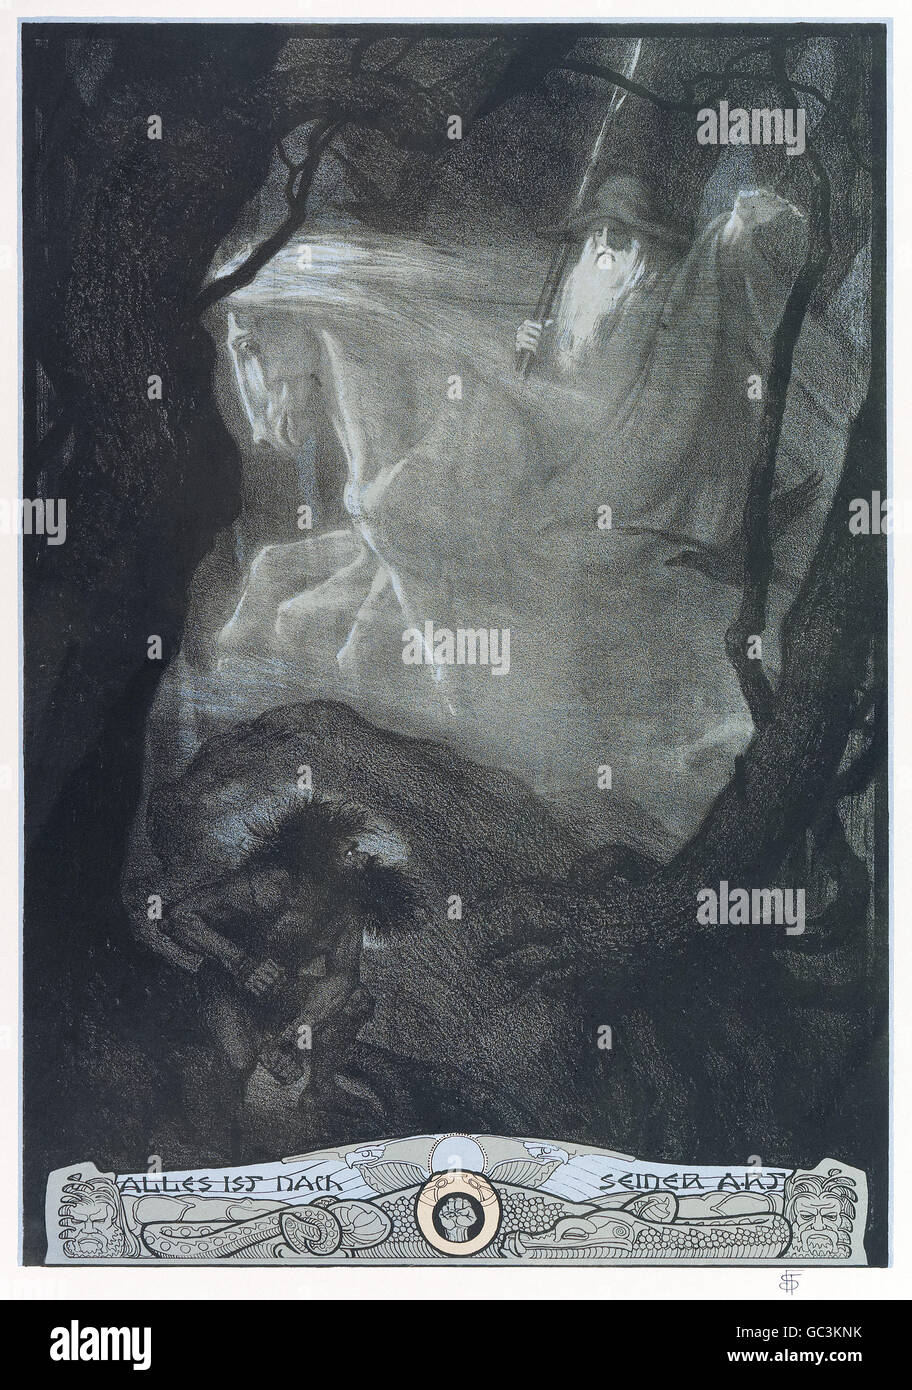 Franz Stassen (1869-1949) illustration pour "Der Ring des Nibelungen (Siegfried)" (l'Anneau du Nibelung : Partie 3 : Siegfried) de Richard Wagner (1813-1883). Le Wanderer (Wotan) arrive à l'entrée de la grotte de Fafner Alberich, où est la vigile. Voir la description pour plus d'informations. Banque D'Images